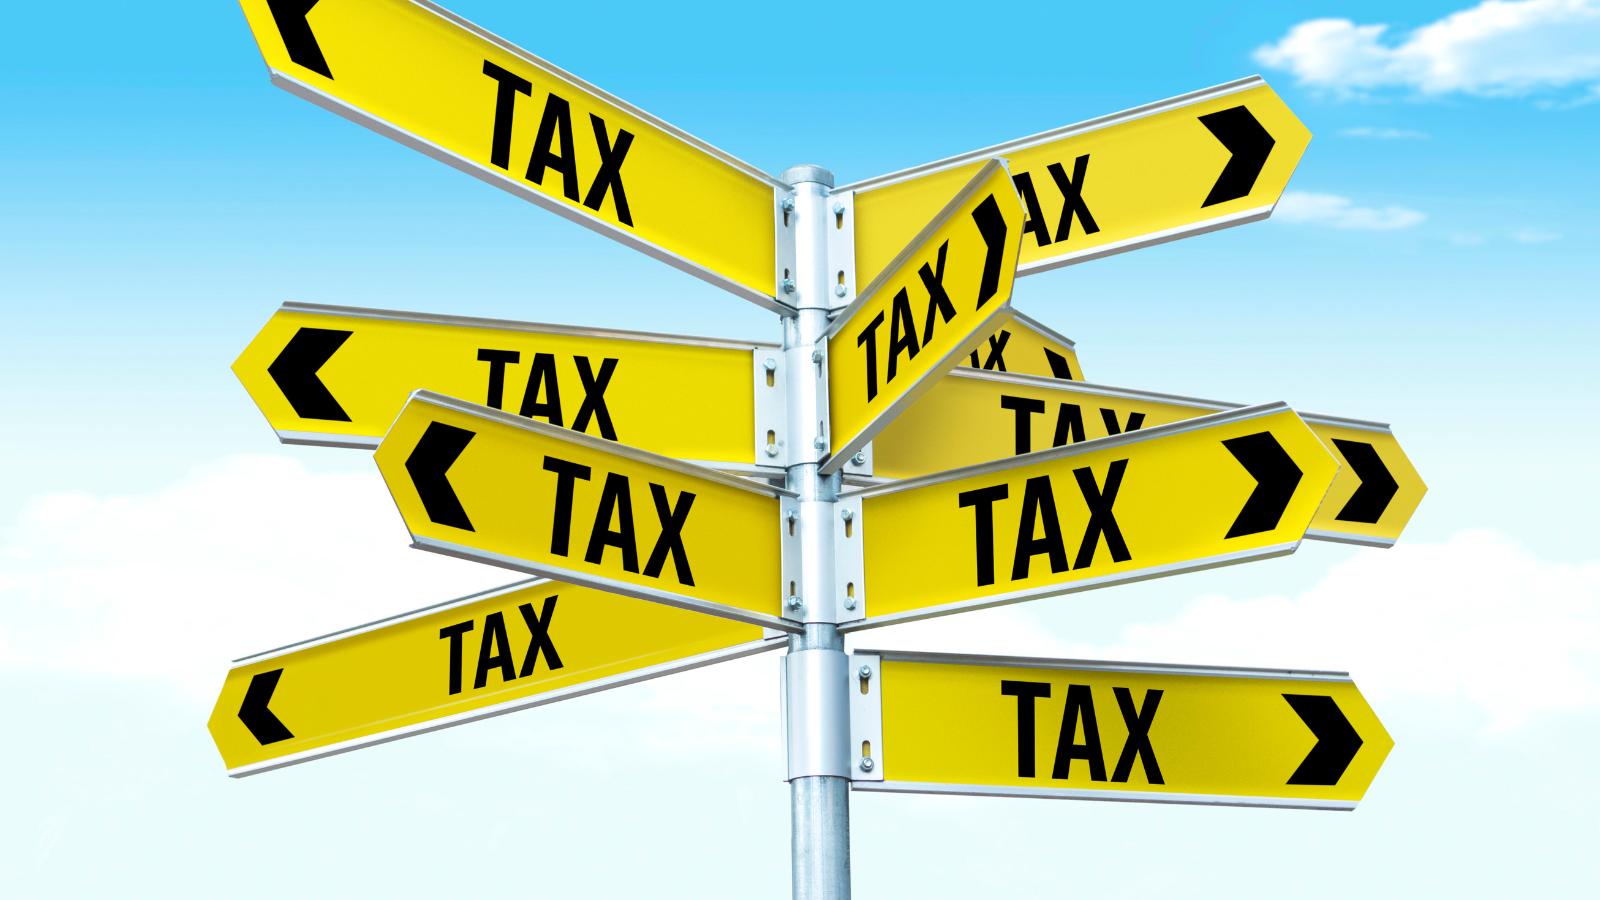 IRS Fresh Start Tax Program